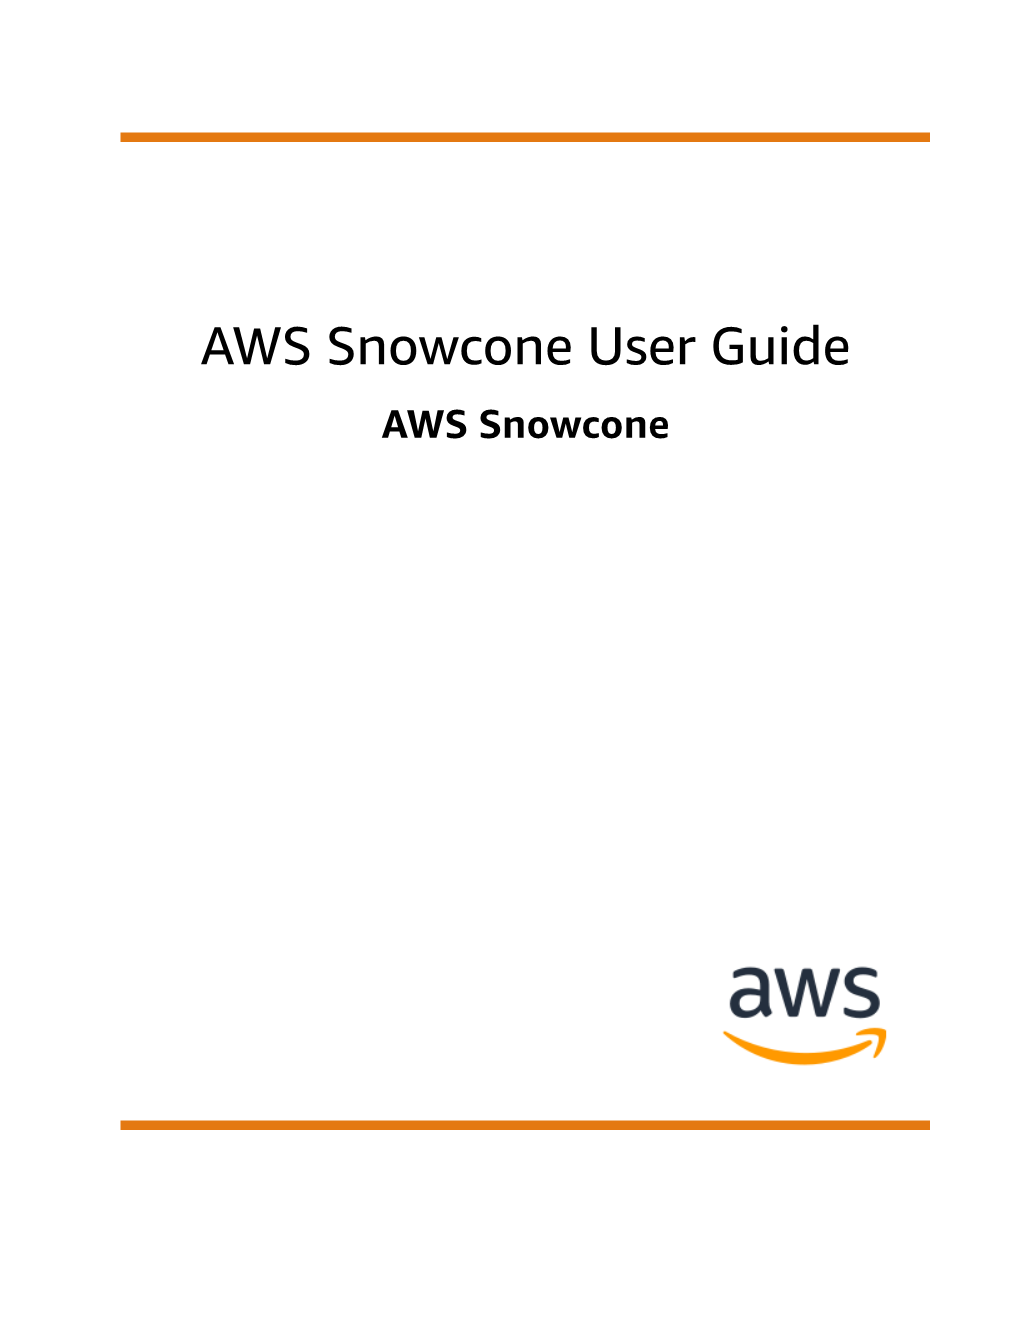 AWS Snowcone User Guide AWS Snowcone AWS Snowcone User Guide AWS Snowcone